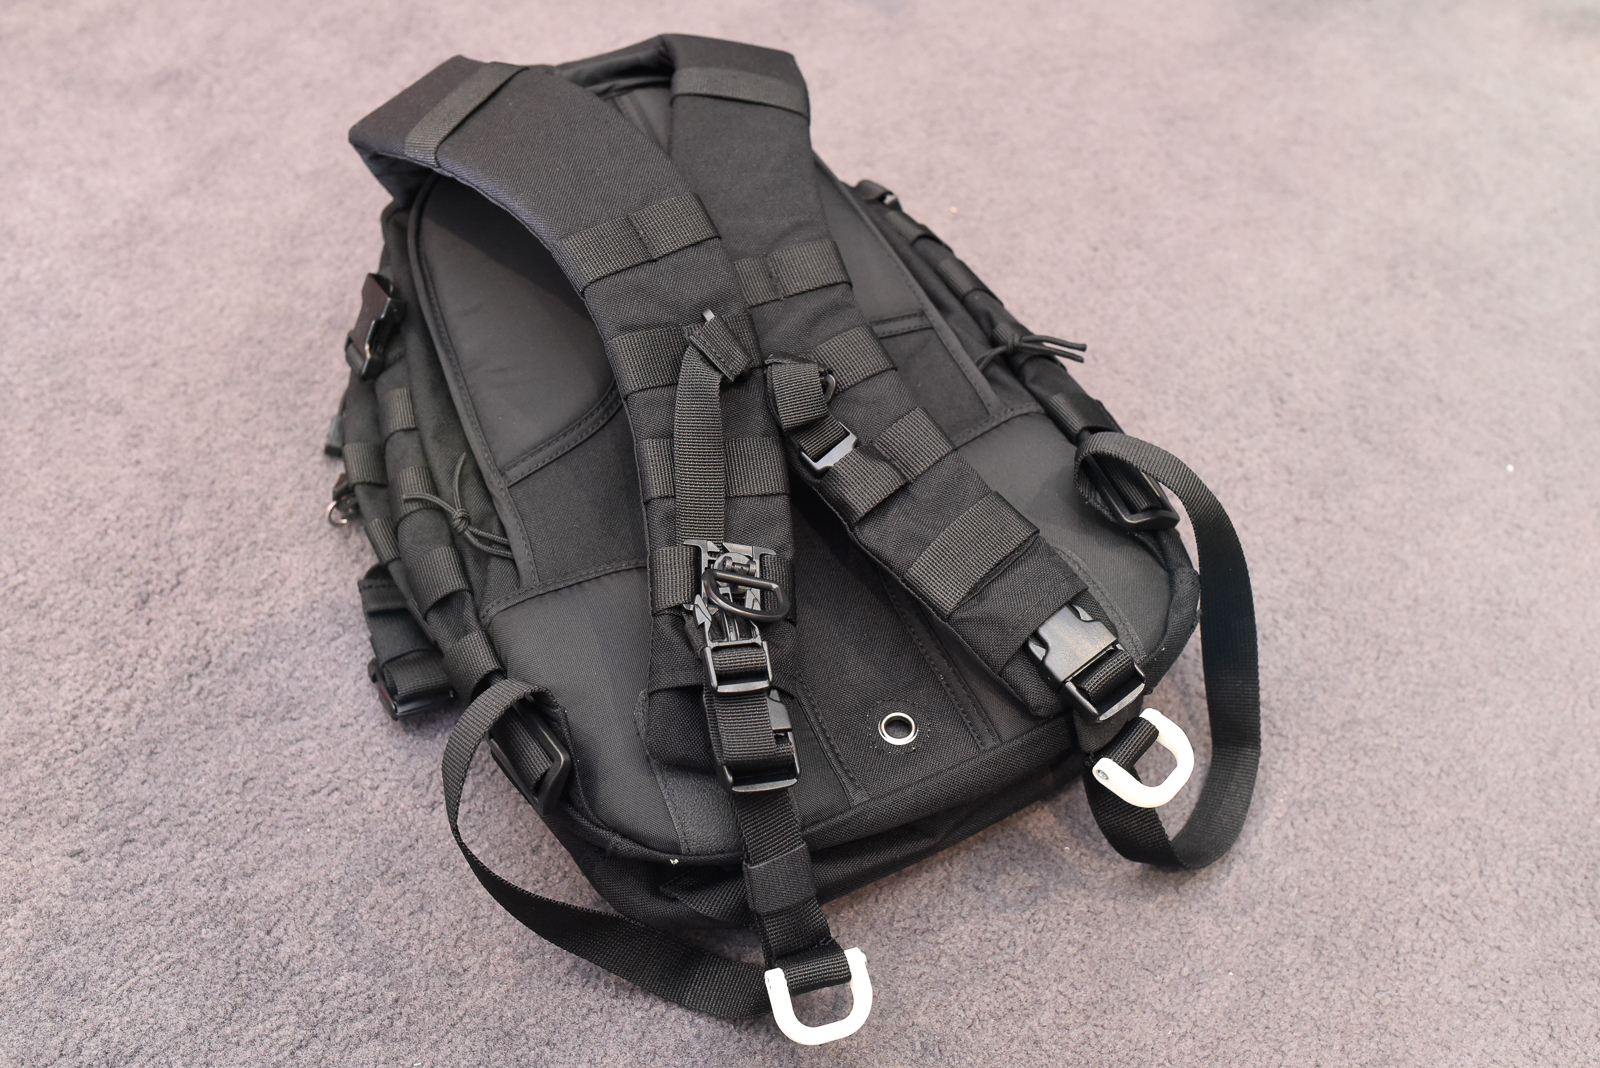 D-ring for backpack shoulder straps